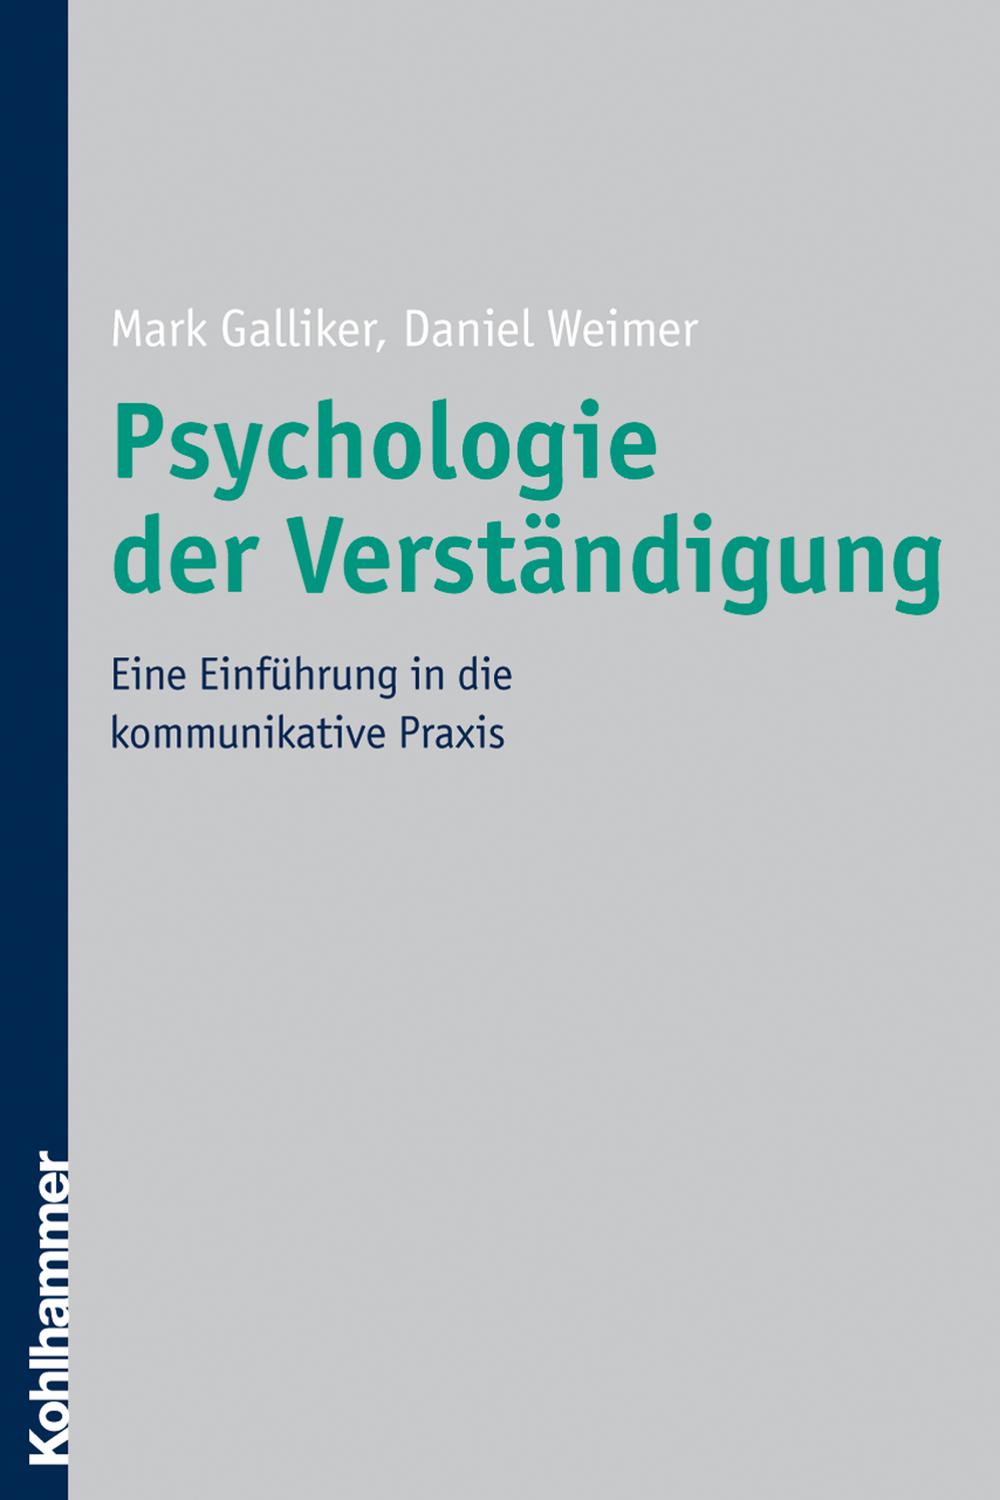 Psychologie der Verständigung - Mark Galliker, Daniel Weimer